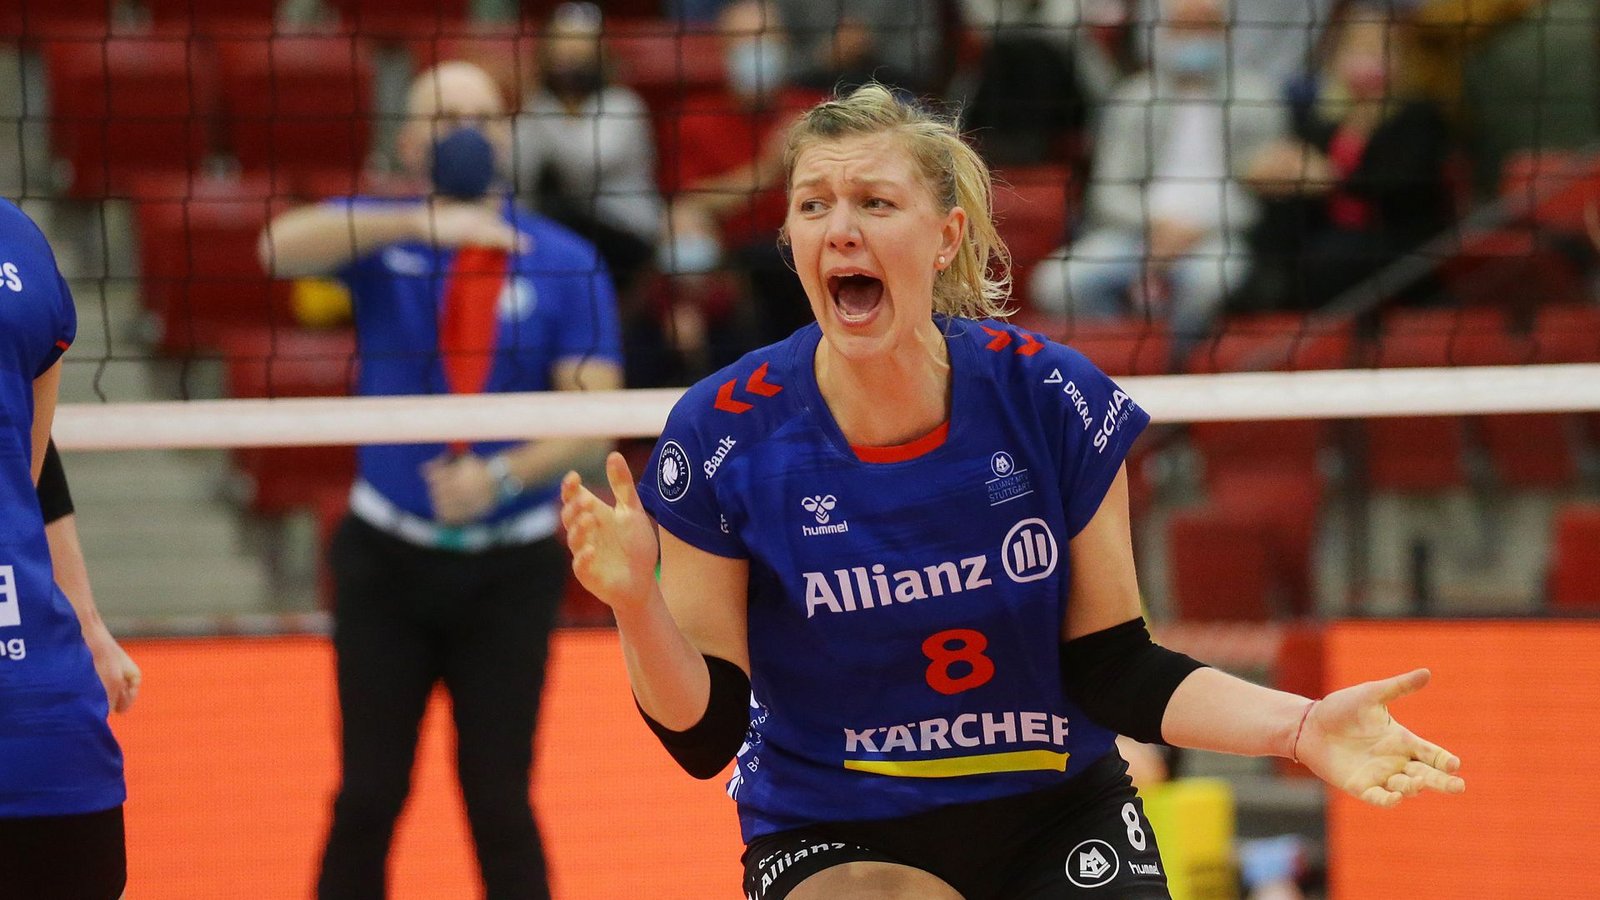 Voller Emotionalität und Leidenschaft: Zuspielerin Ilka Van de Vyver ist eine der Führungskräfte bei Volleyball-Bundesligist Allianz MTV Stuttgart.

Foto: Pressefoto BaumannFoto: &nbsp;